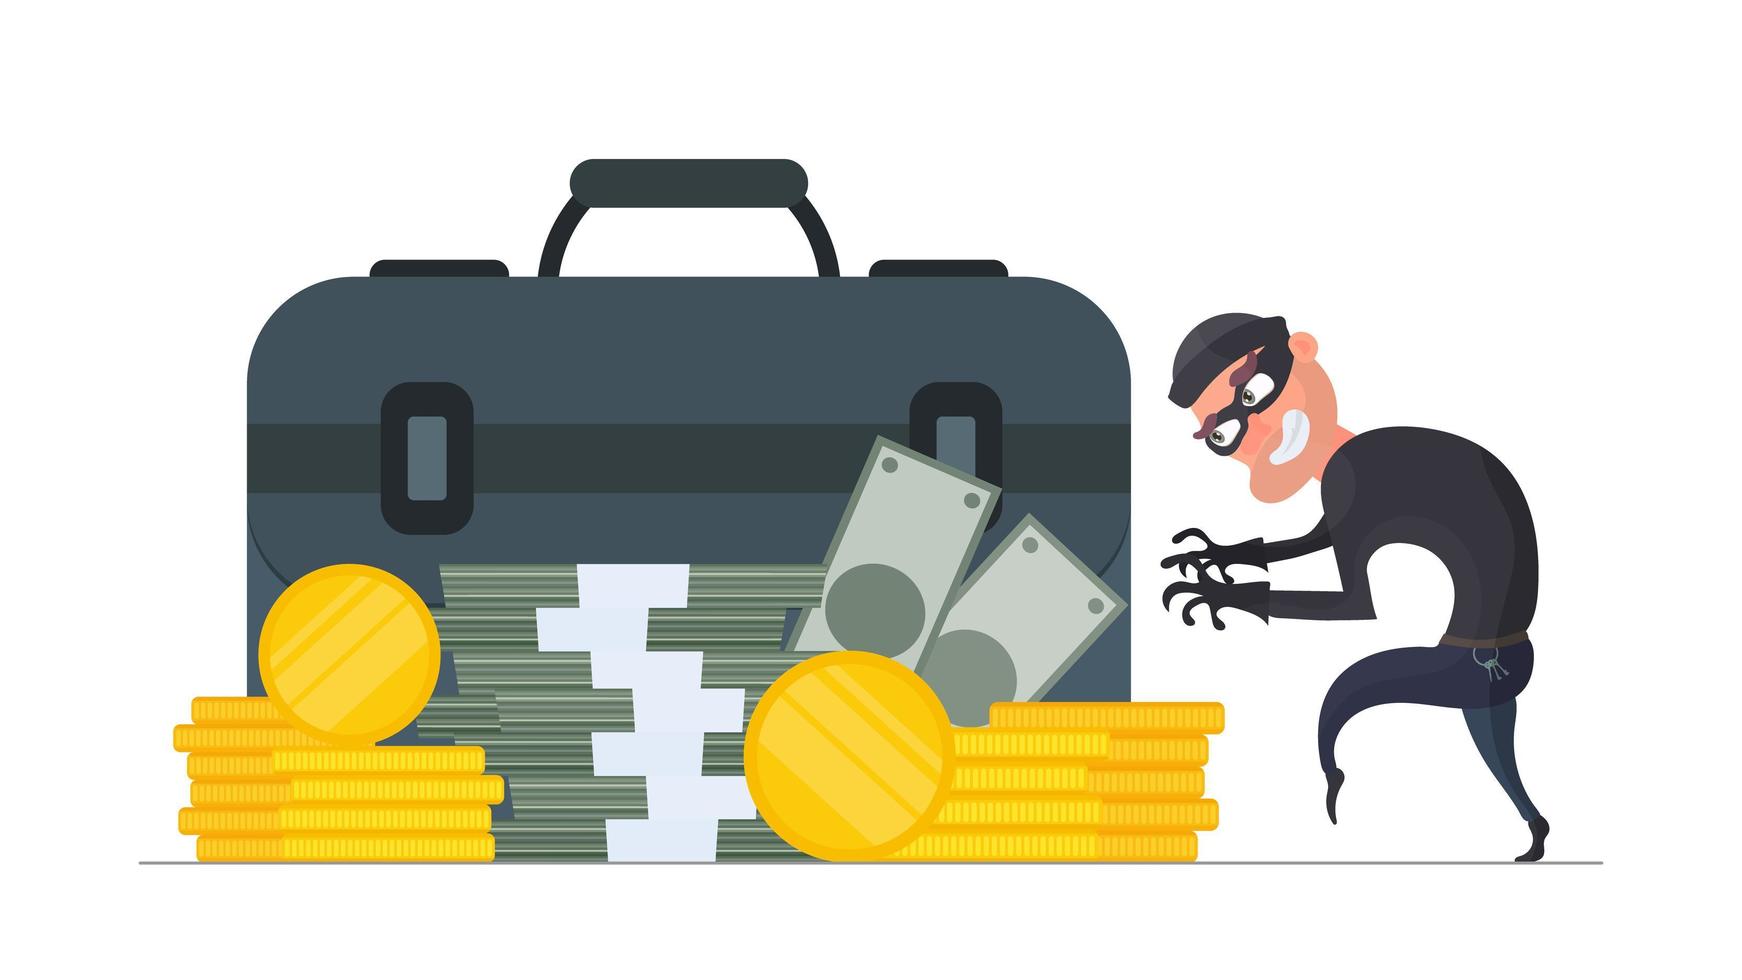 il ladro ruba i soldi. il criminale ruba monete d'oro. concetto di sicurezza finanziaria e di rapina. stile piatto, isolato, vettore. vettore